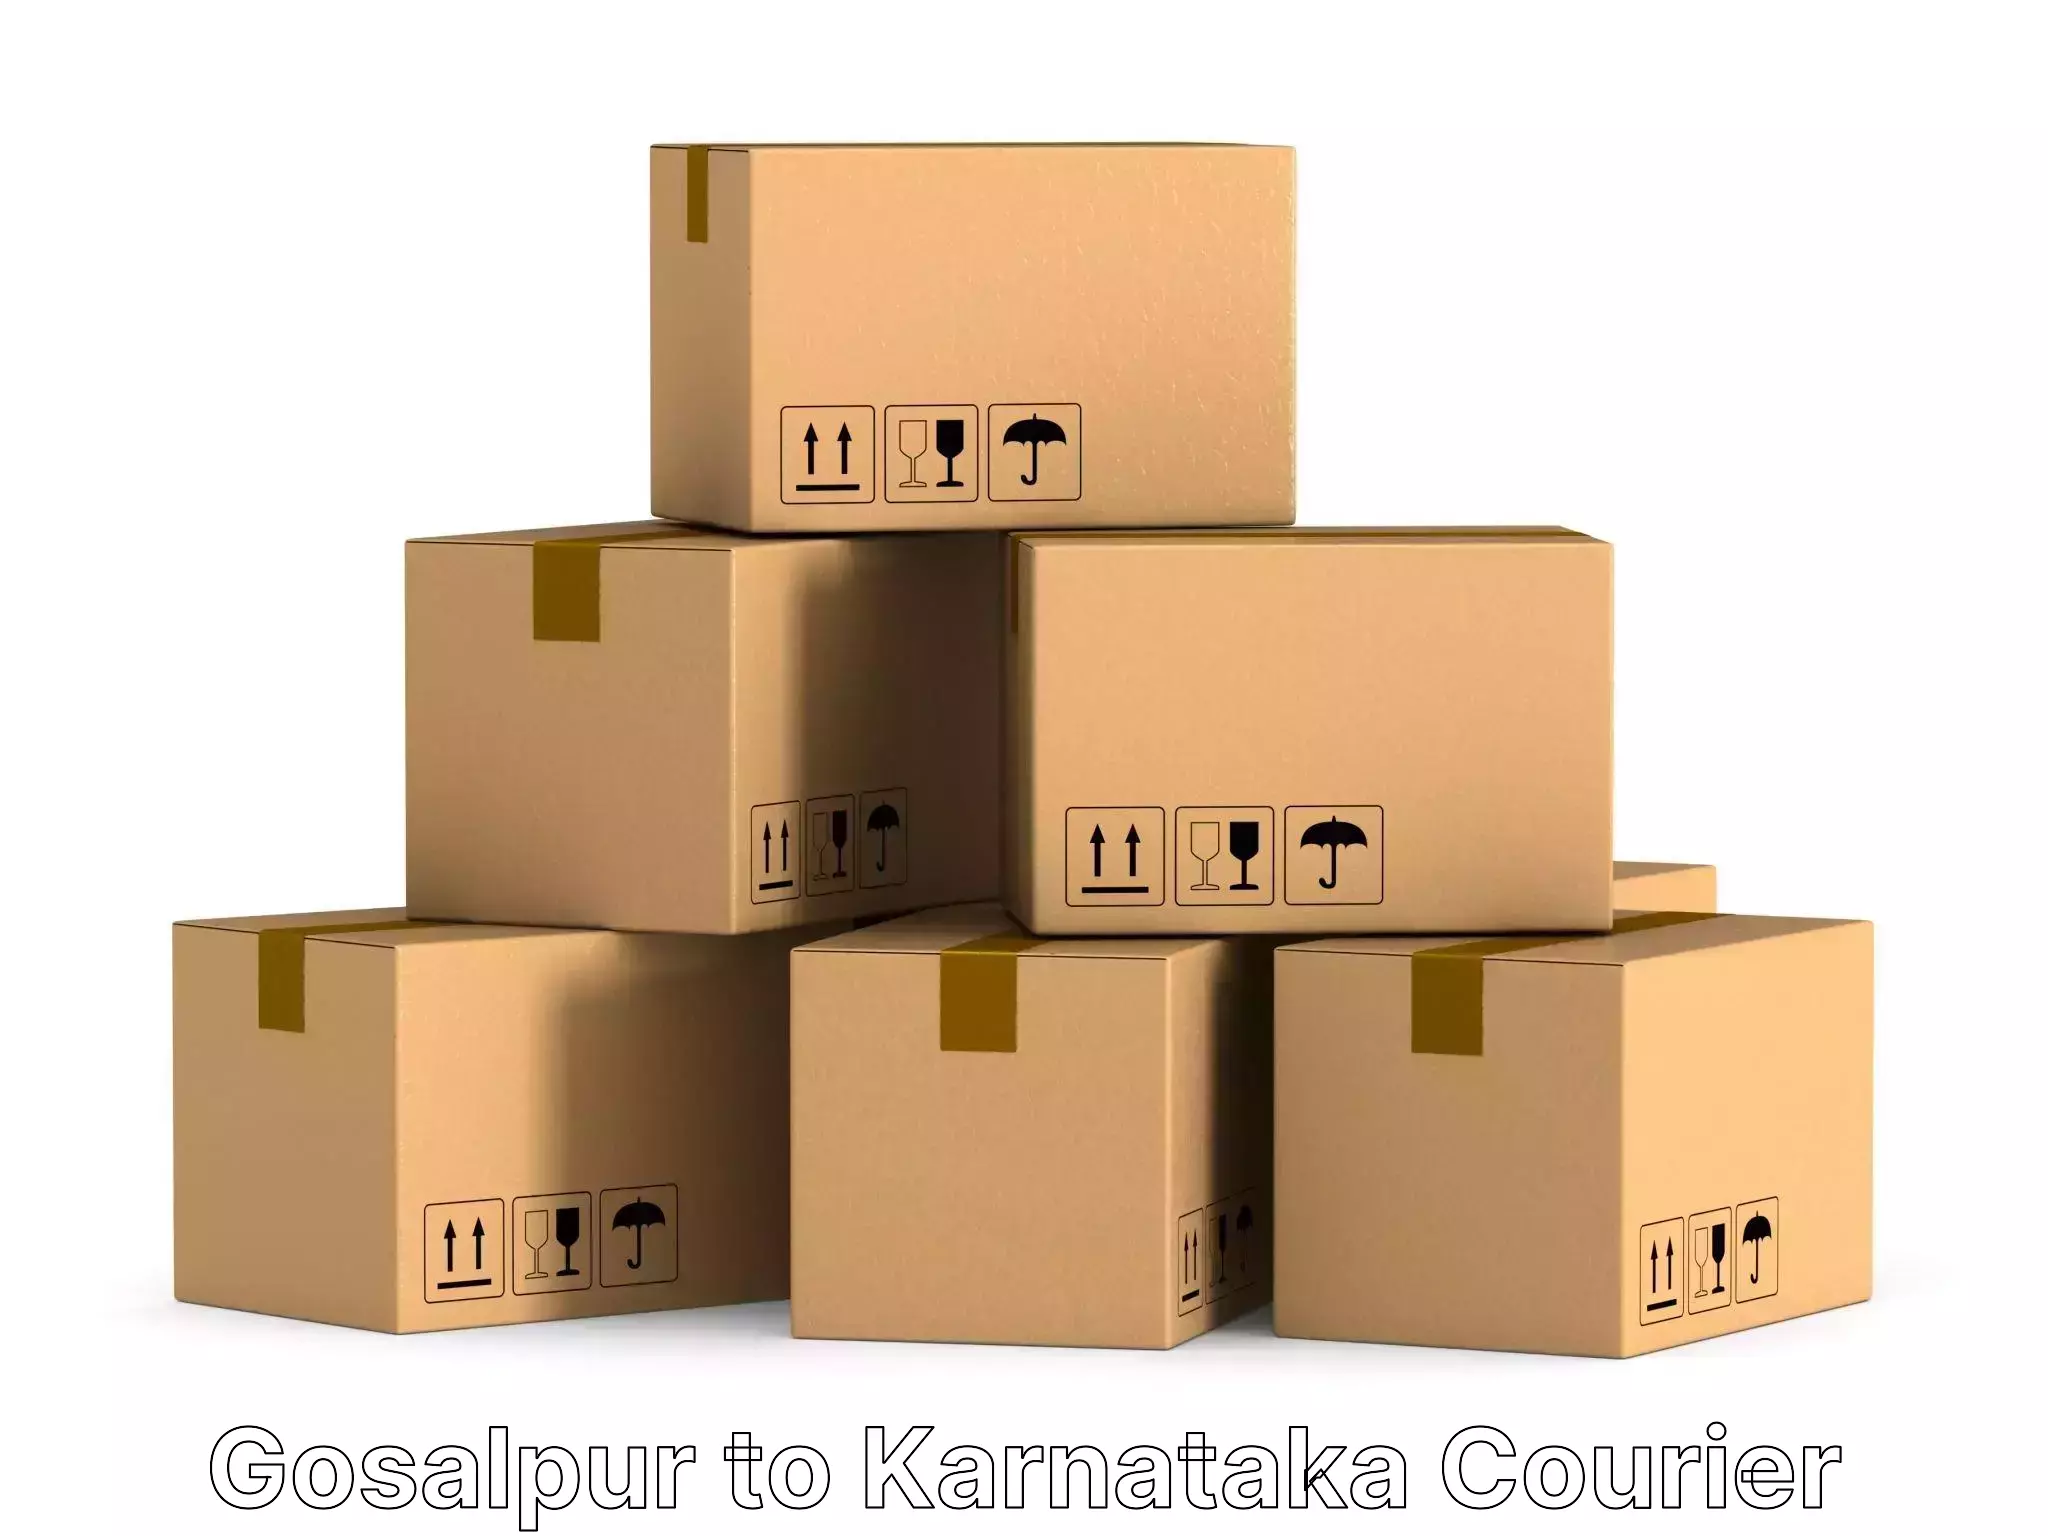 Furniture moving experts Gosalpur to Magadi